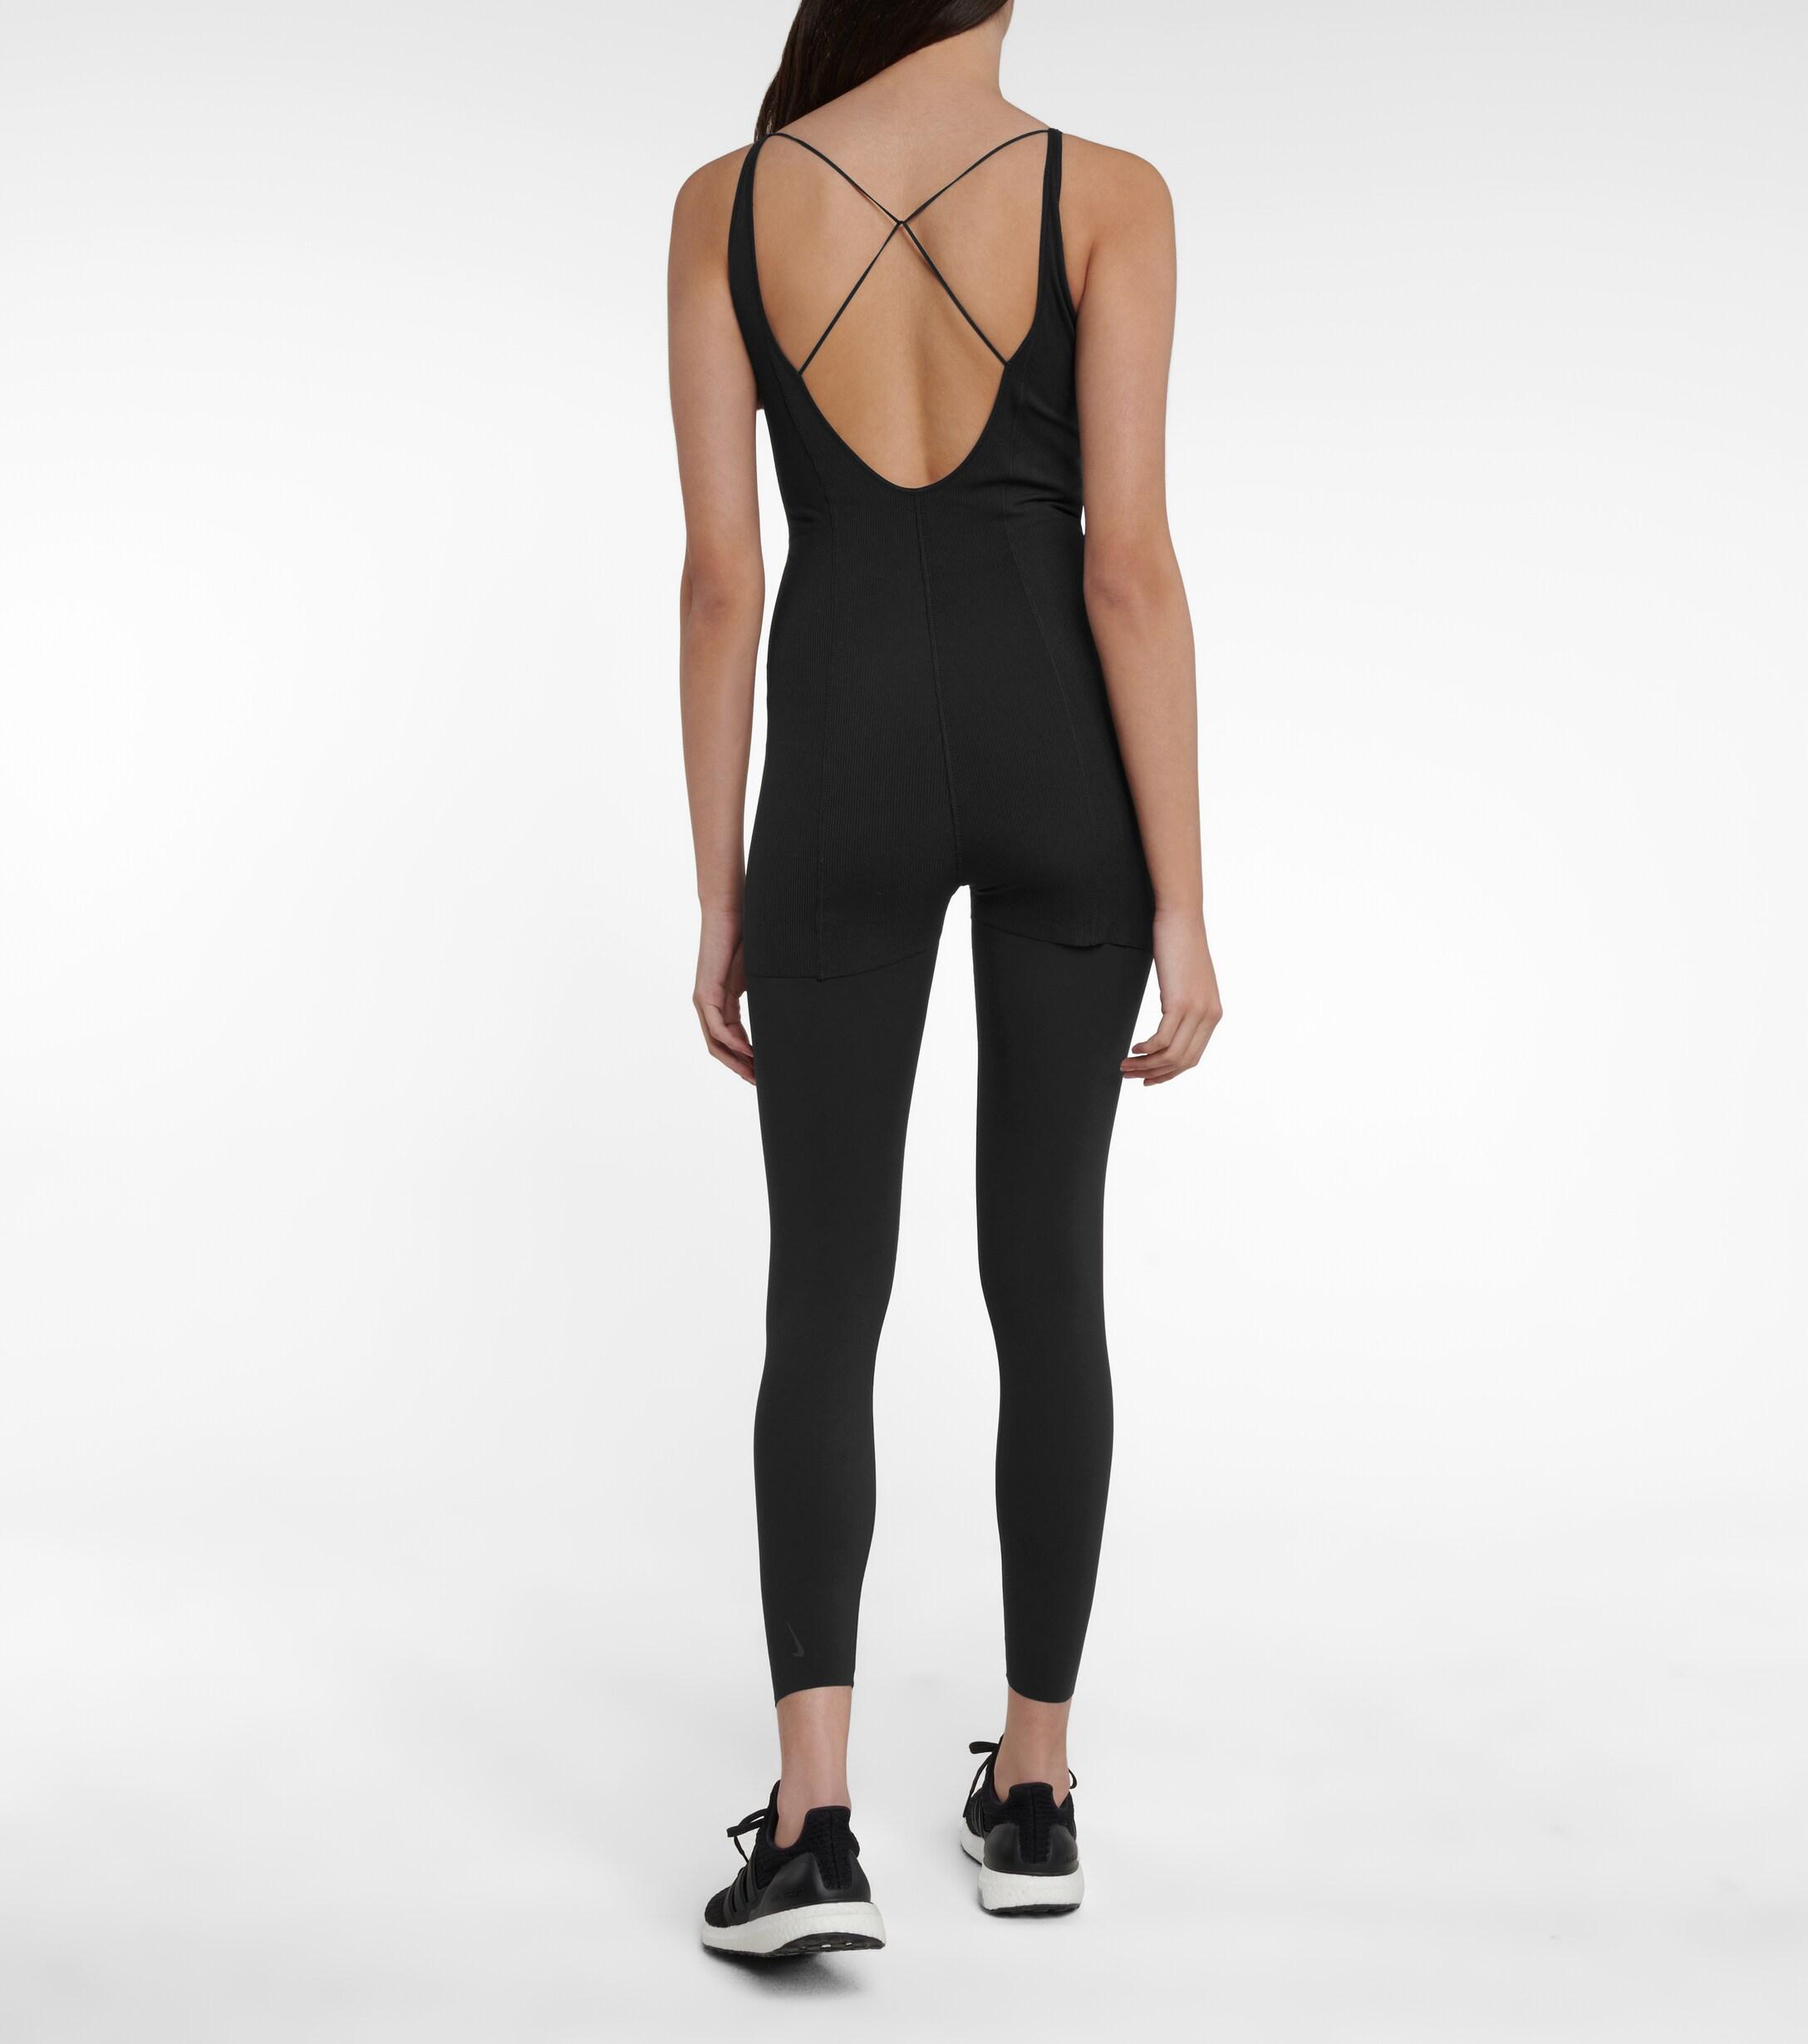 Nike Yoga Luxe Bodysuit in Black - Lyst